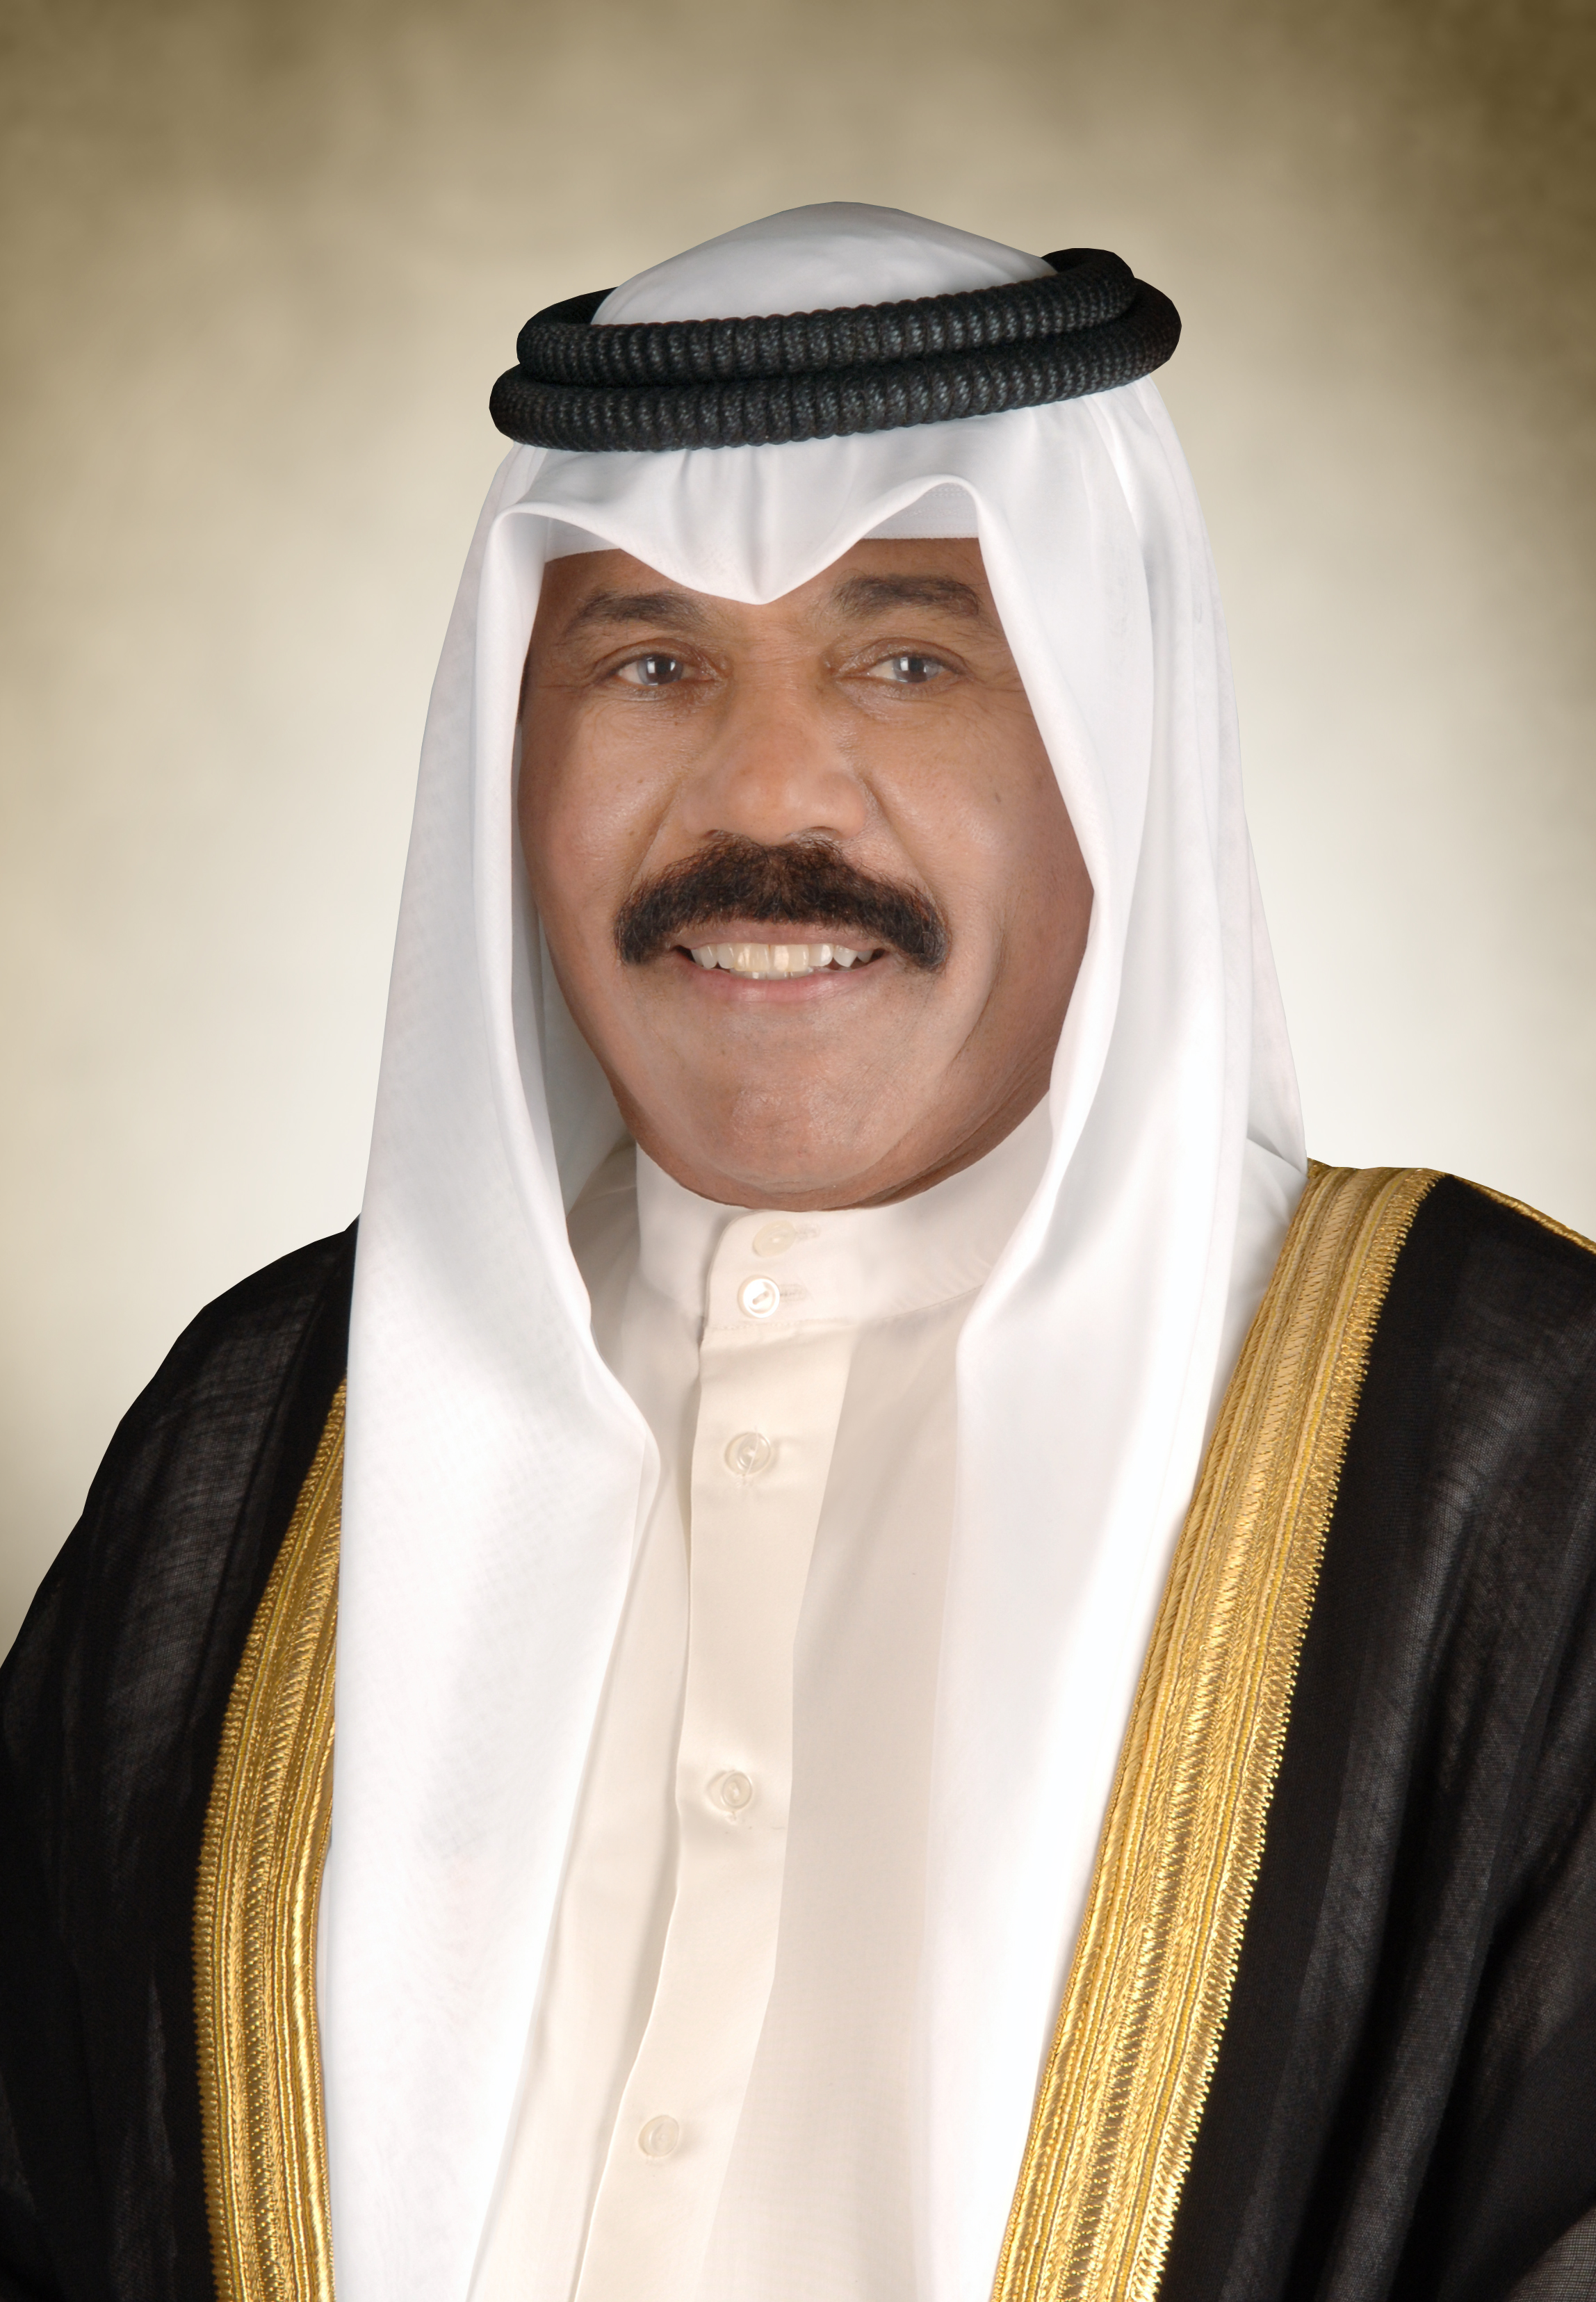  سمو أمير البلاد يتوجه إلى السعودية غدا لترؤس وفد الكويت في اجتماع الدورة الـ(41 ) لمجلس التعاون الخليجي